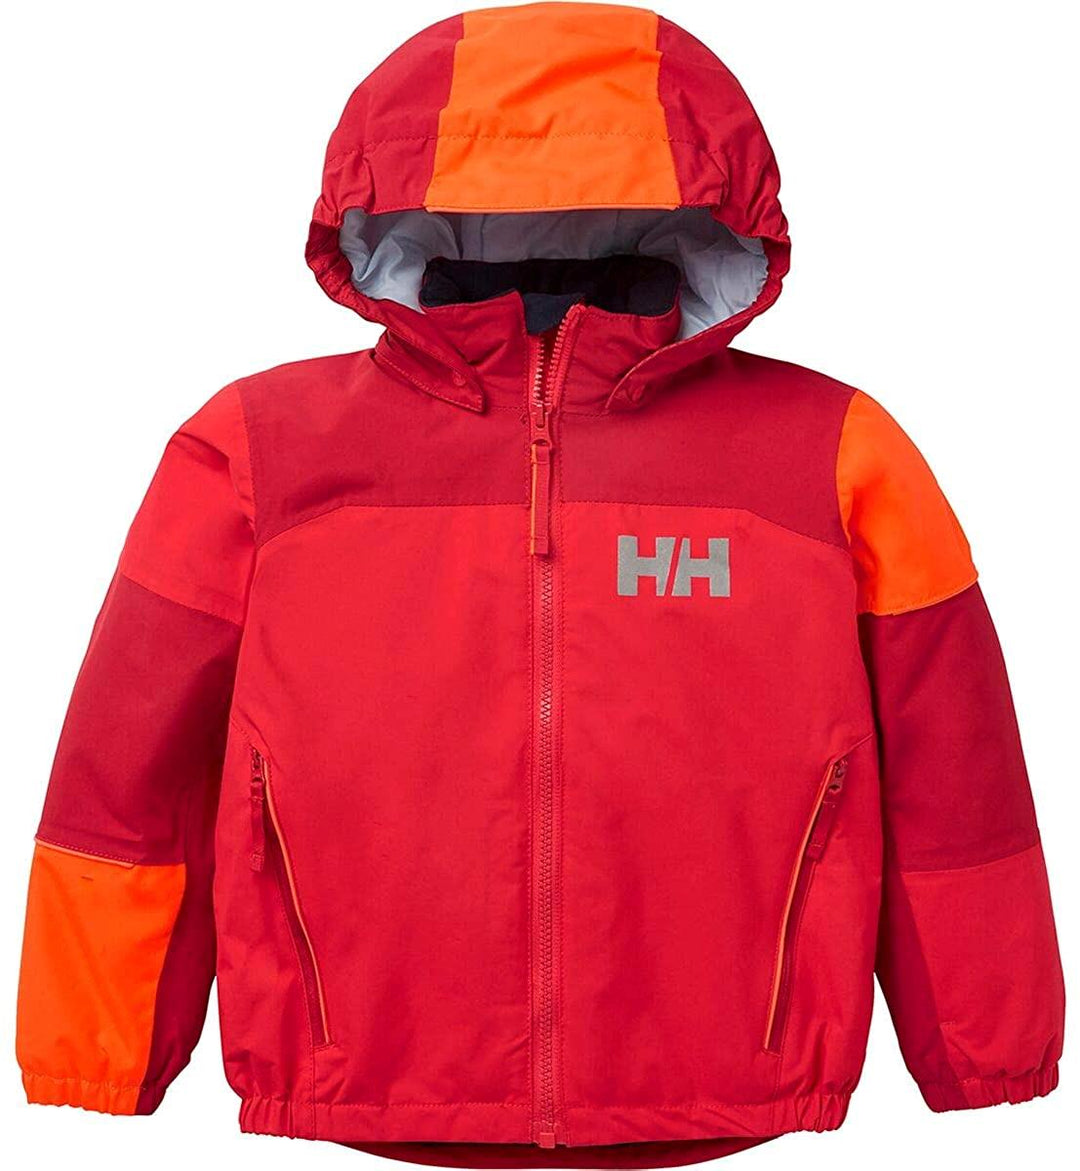 Helly Hansen Kids’ Rider 2.0 Insulated Ski Jacket Raspberry